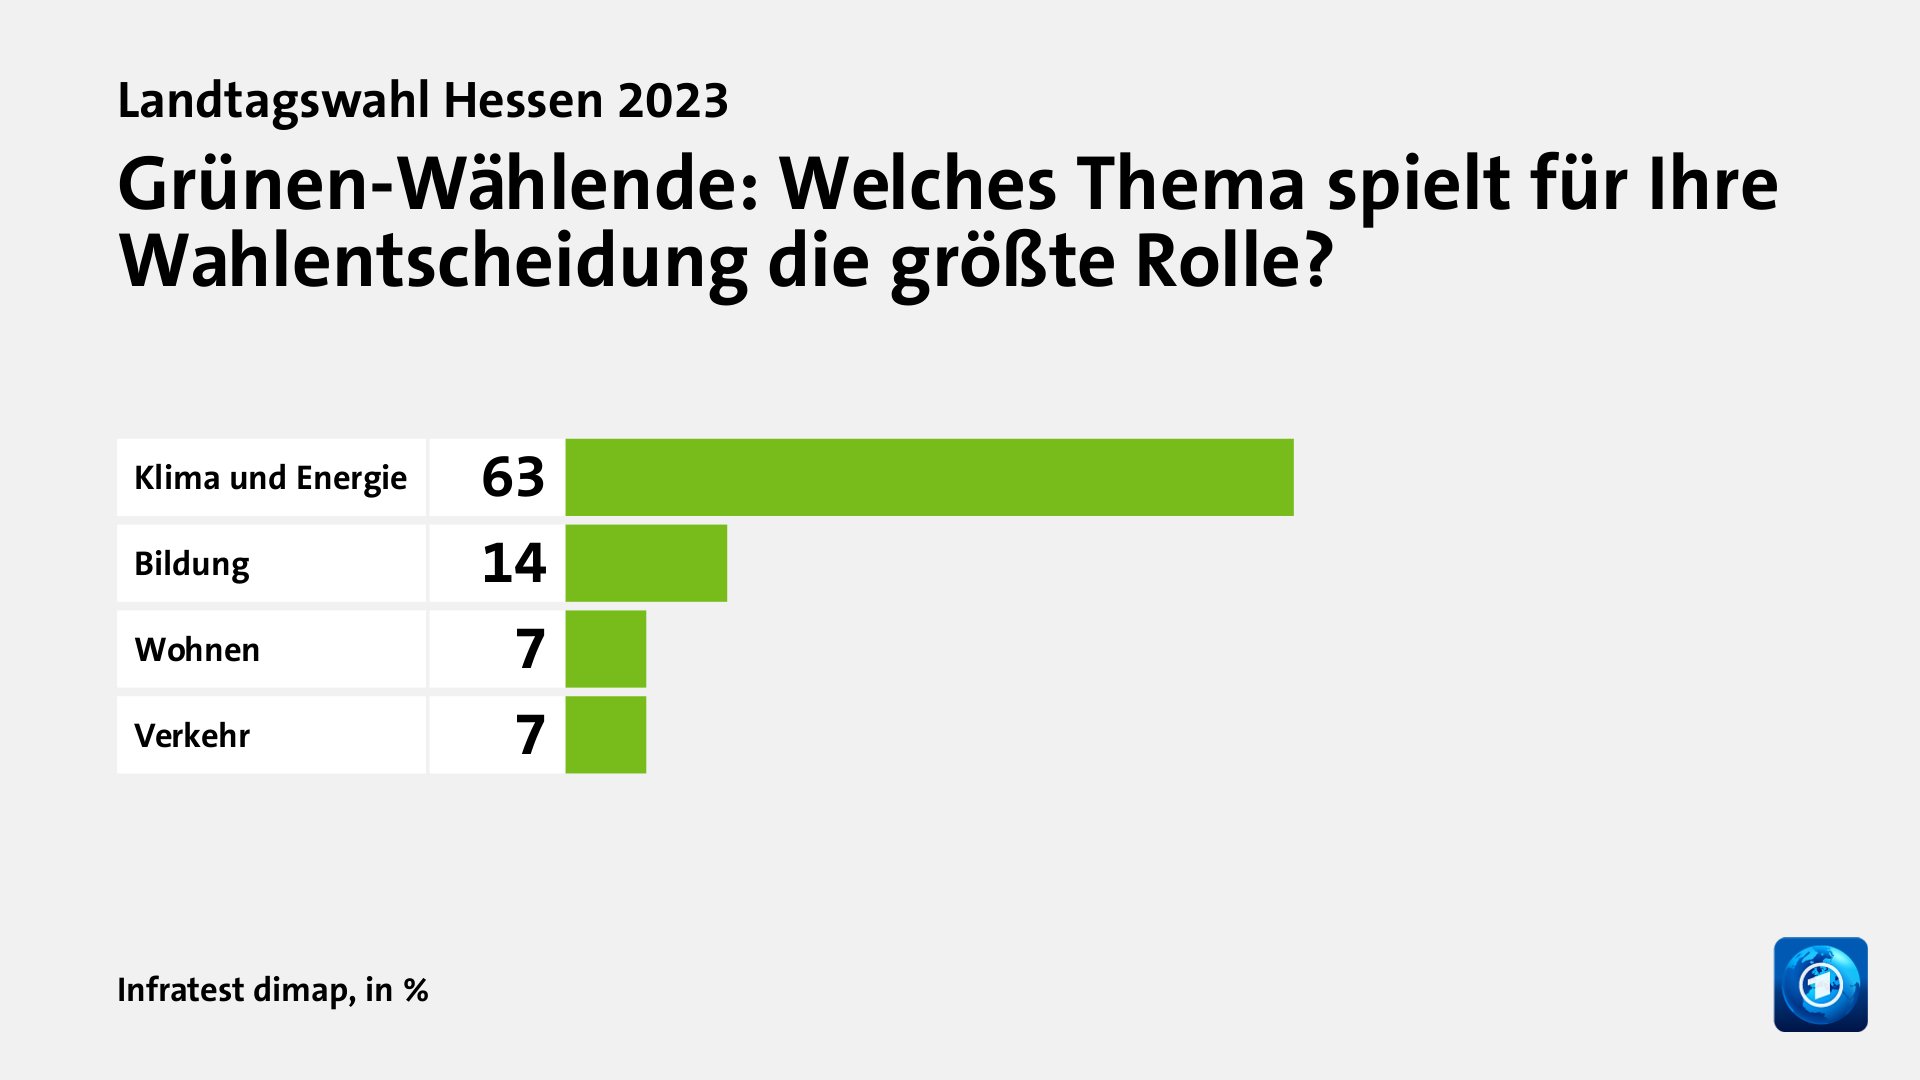 Grünen-Wählende: Welches Thema spielt für Ihre Wahlentscheidung die größte Rolle?, in %: Klima und Energie 63, Bildung 14, Wohnen 7, Verkehr 7, Quelle: Infratest dimap